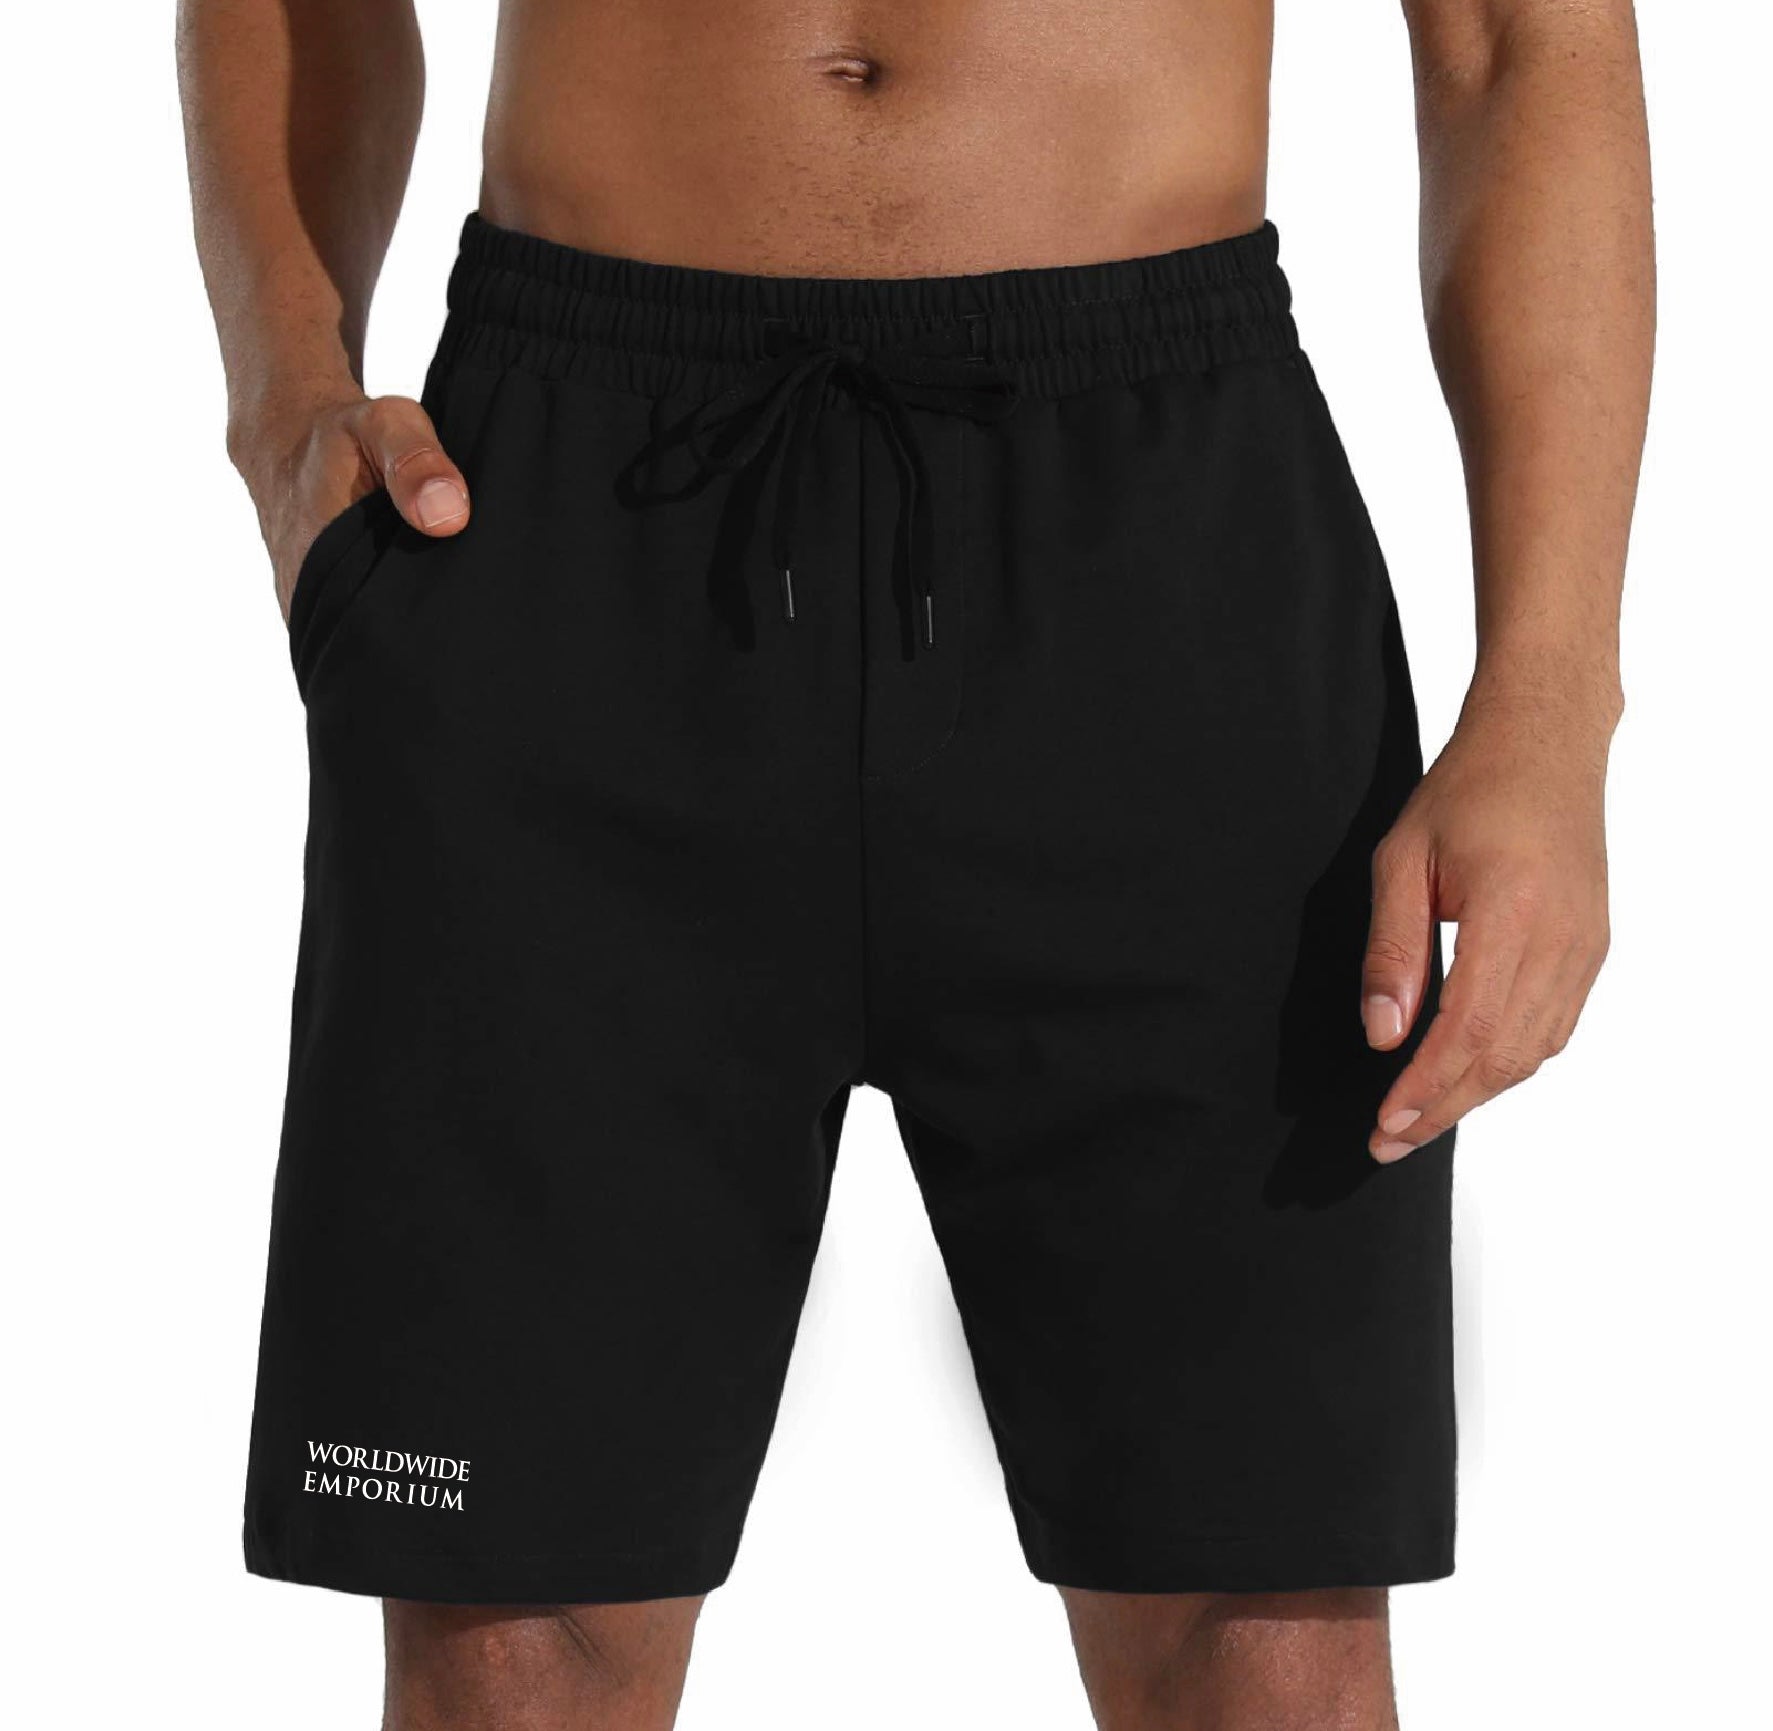 Afterdark black shorts